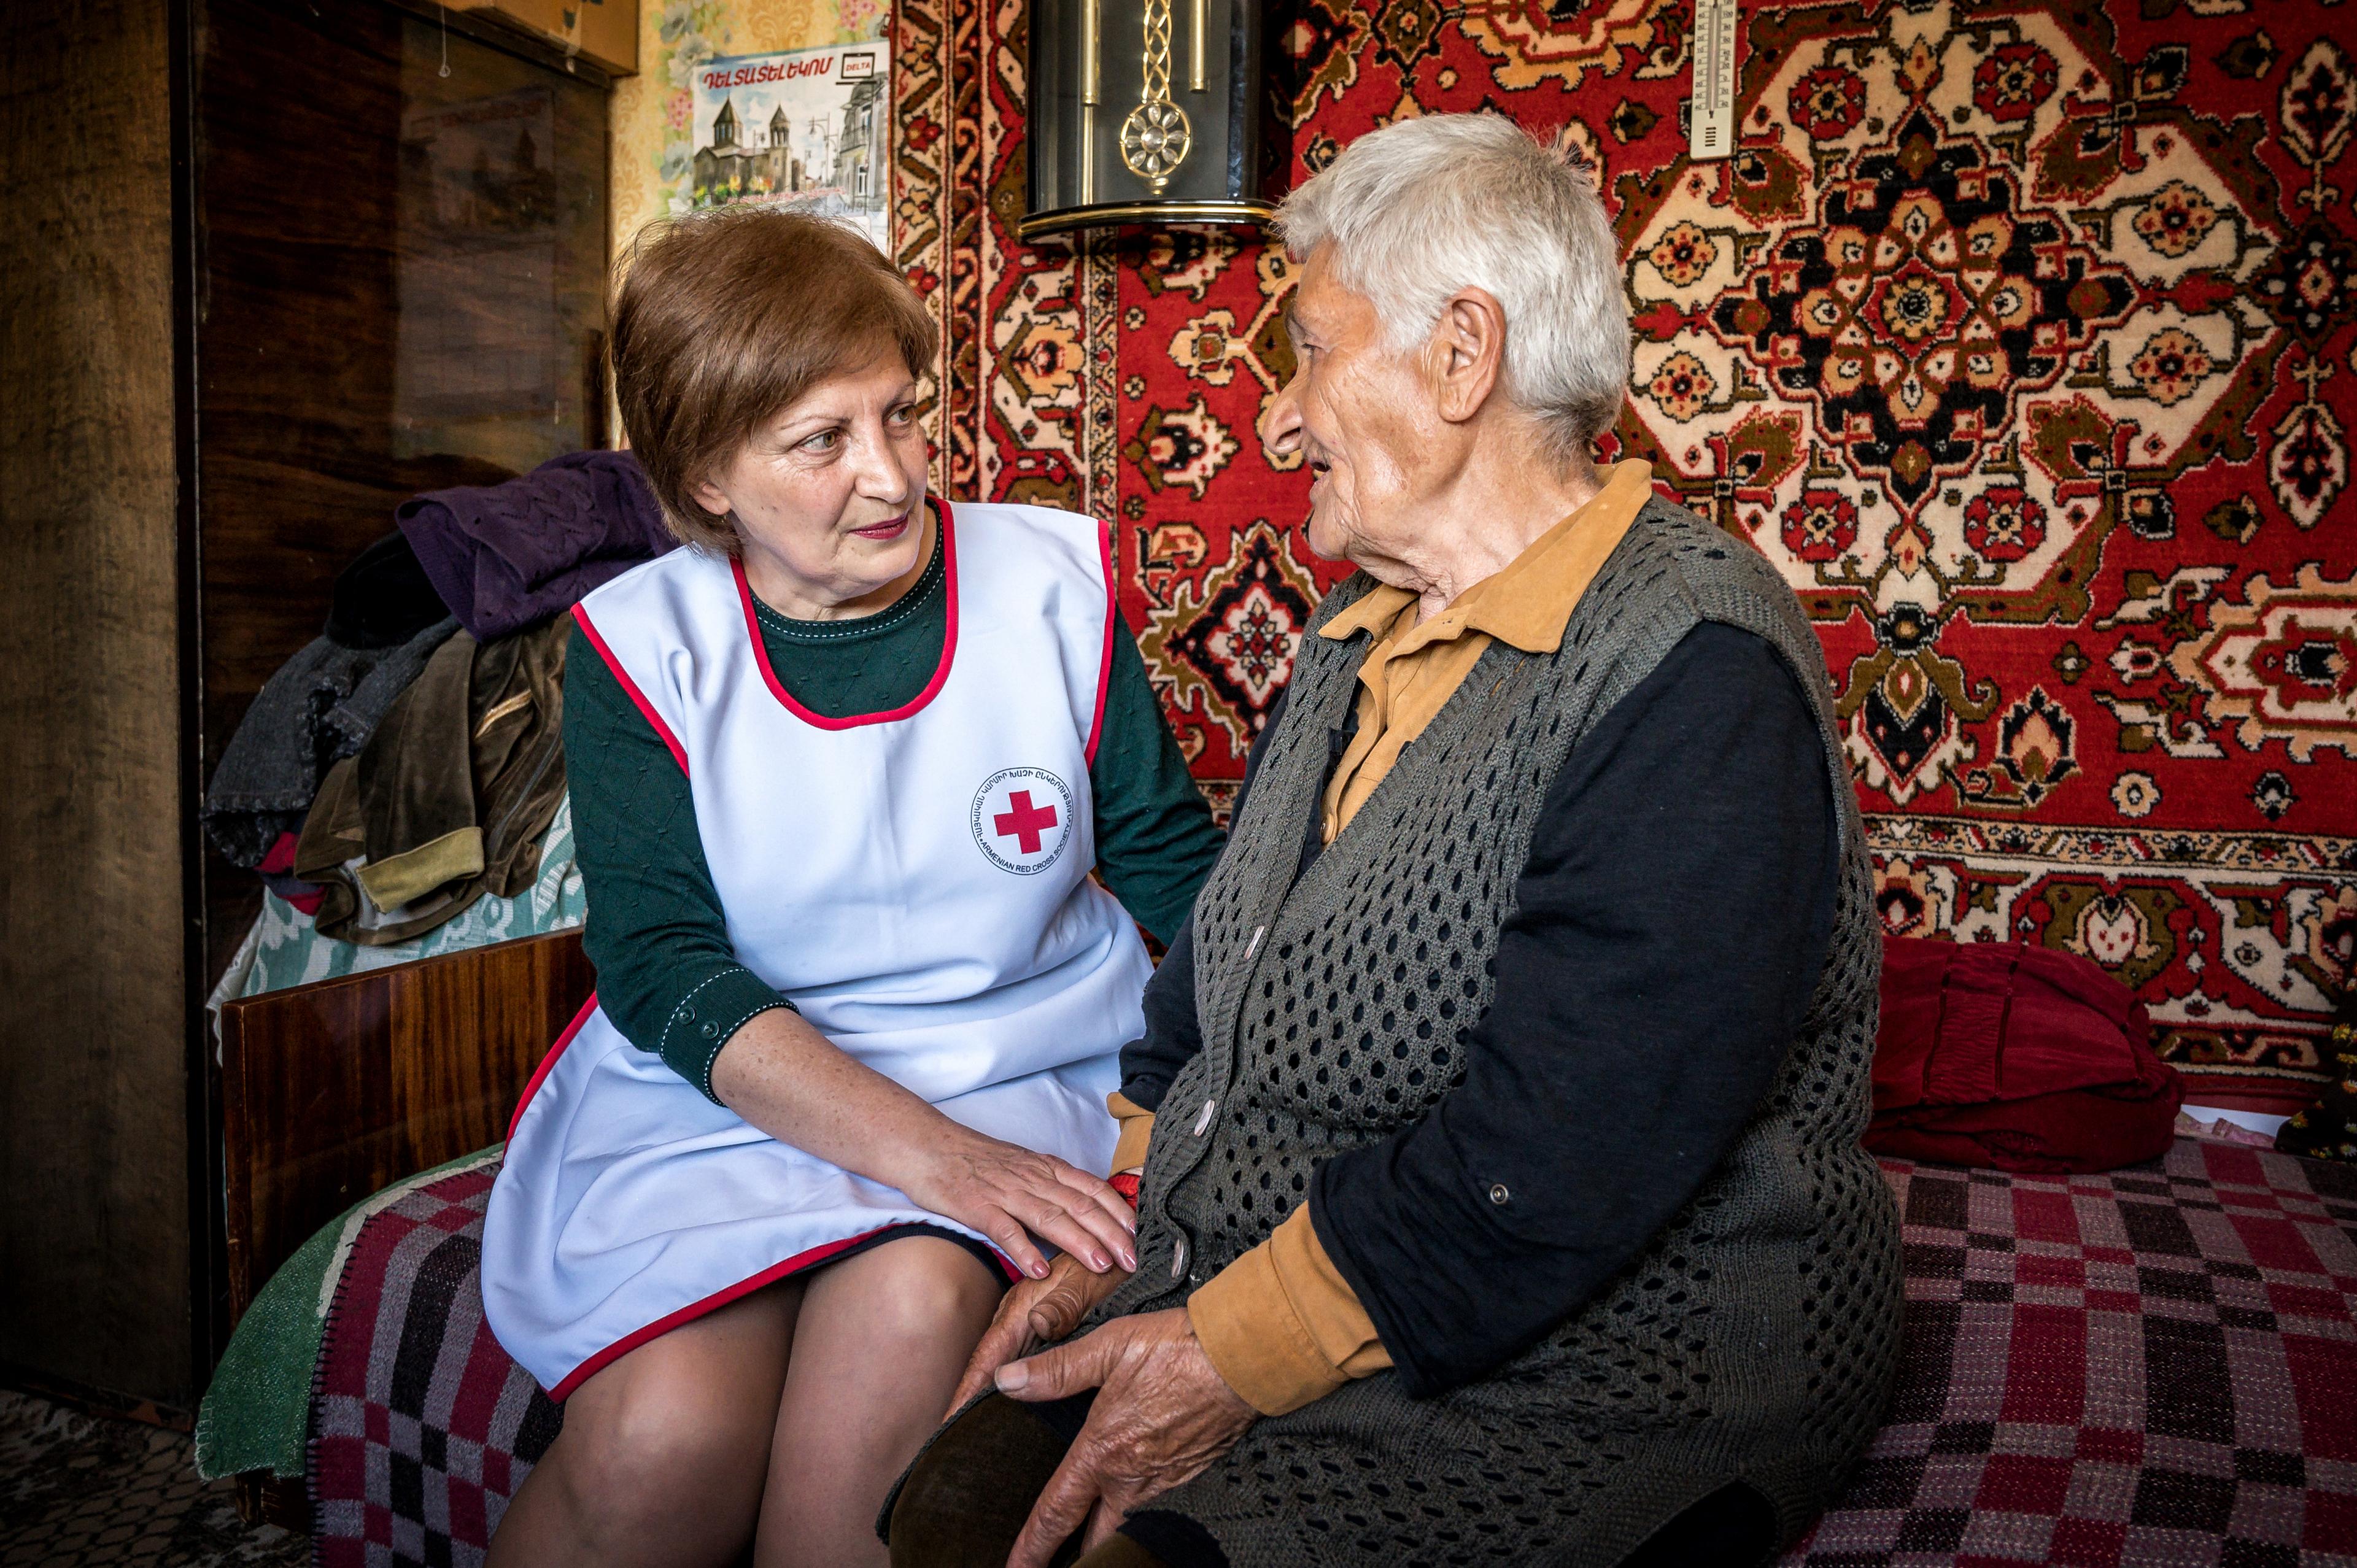 Une femme portant un gilet de la Croix-Rouge est assise en face d'une dame âgée. Elles sont assises sur un lit et des tapis sont accrochés au mur derrière elles.